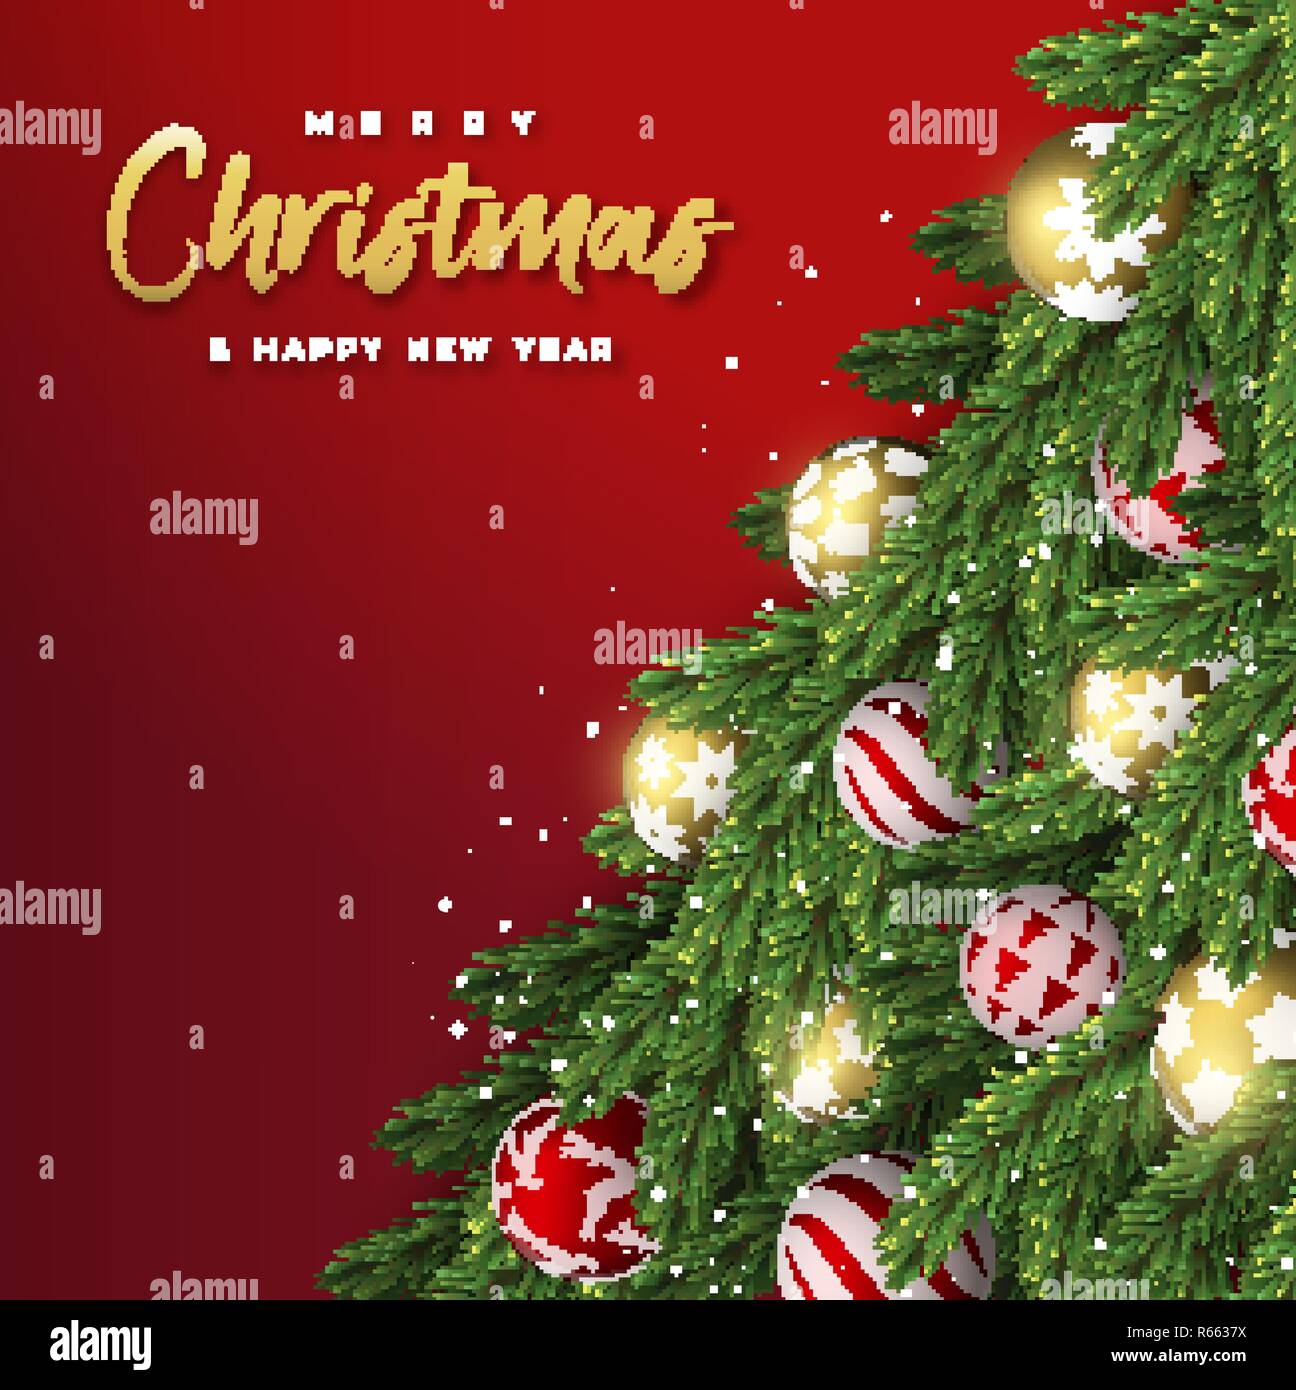 Auguri di Buon Natale felice anno nuovo card. Realistico pino con oro e rosso xmas ornamento di sfere per la vacanza di lusso invito o stagioni saluto. Illustrazione Vettoriale